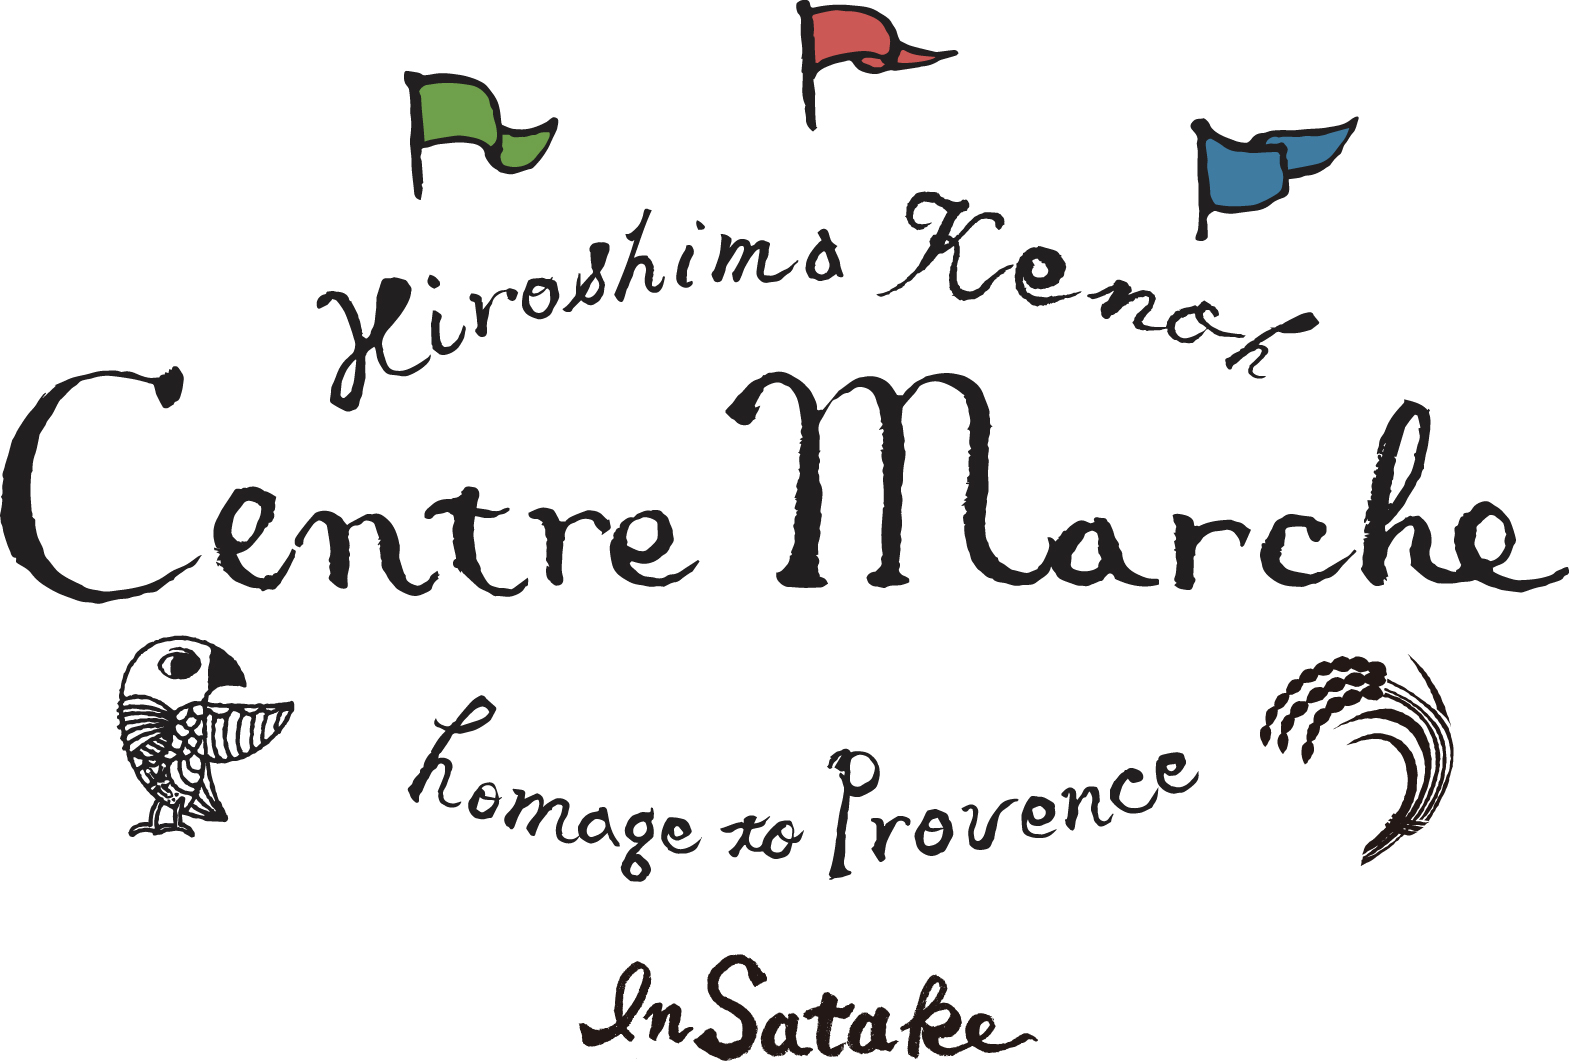 Centre Marche in Satake logo.jpg